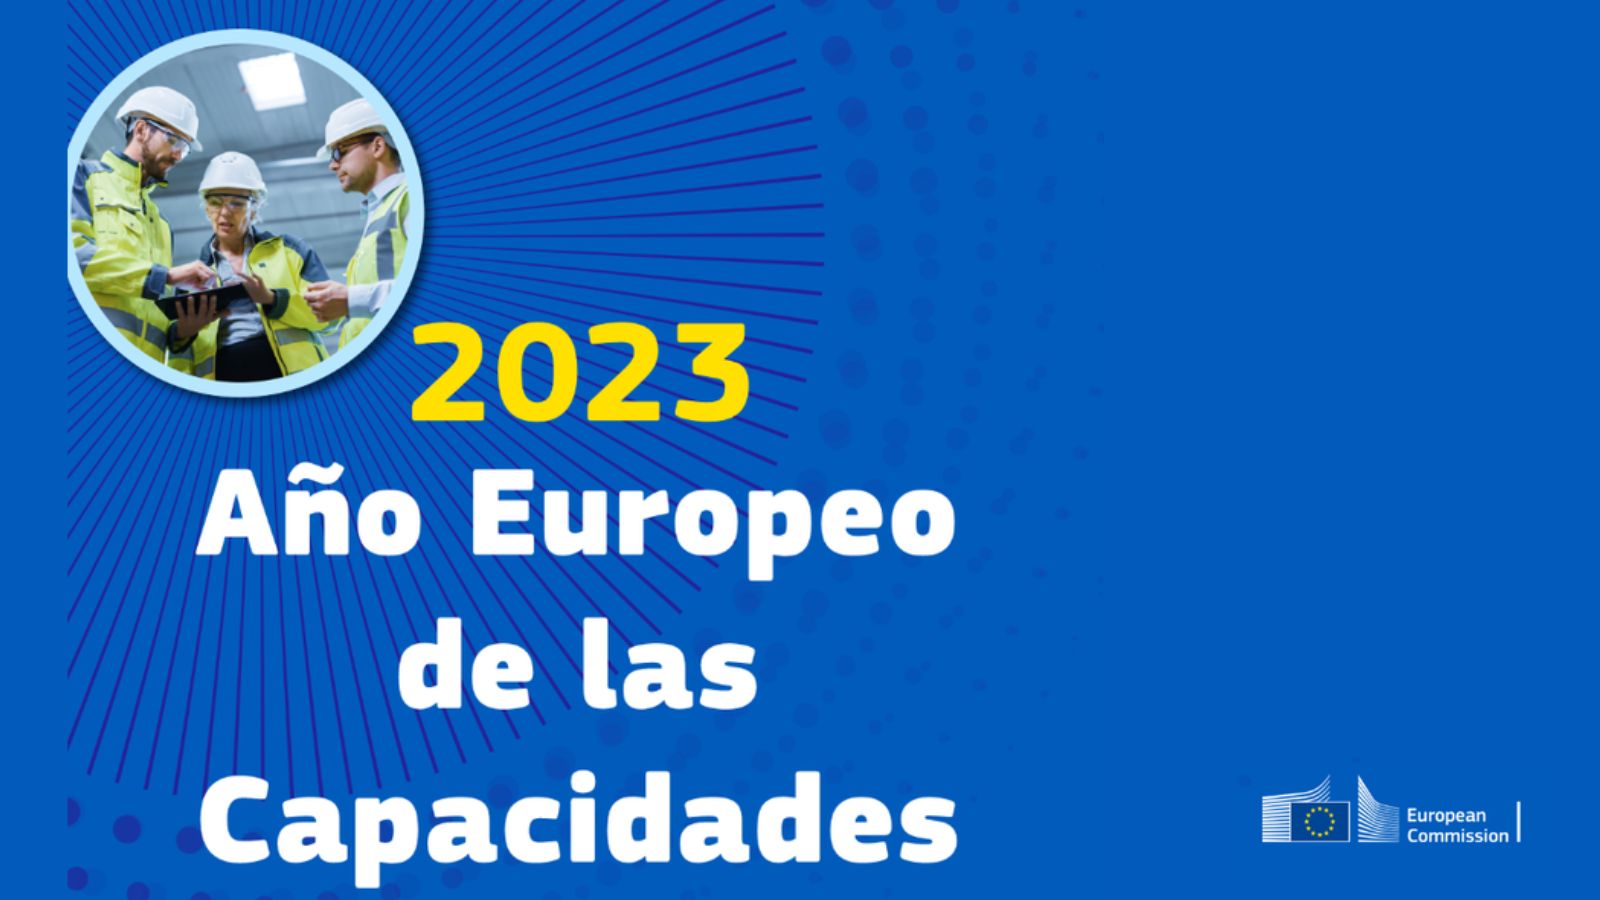 Comisión Europea. 2023 Año Europeo de las Capacidades